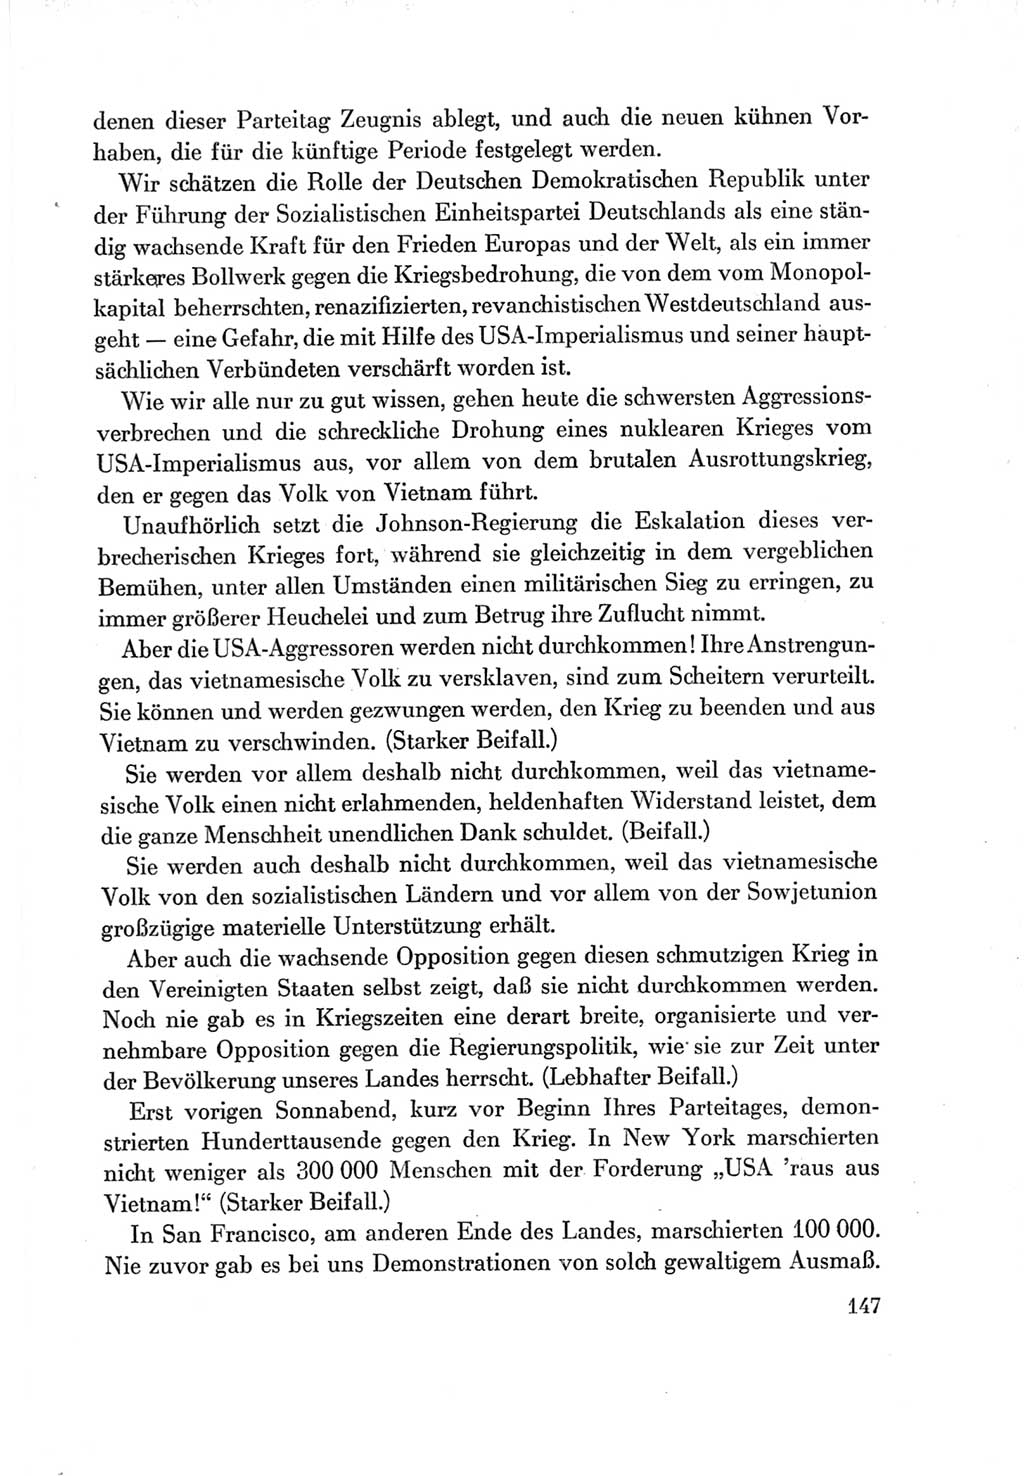 Protokoll der Verhandlungen des Ⅶ. Parteitages der Sozialistischen Einheitspartei Deutschlands (SED) [Deutsche Demokratische Republik (DDR)] 1967, Band Ⅱ, Seite 147 (Prot. Verh. Ⅶ. PT SED DDR 1967, Bd. Ⅱ, S. 147)